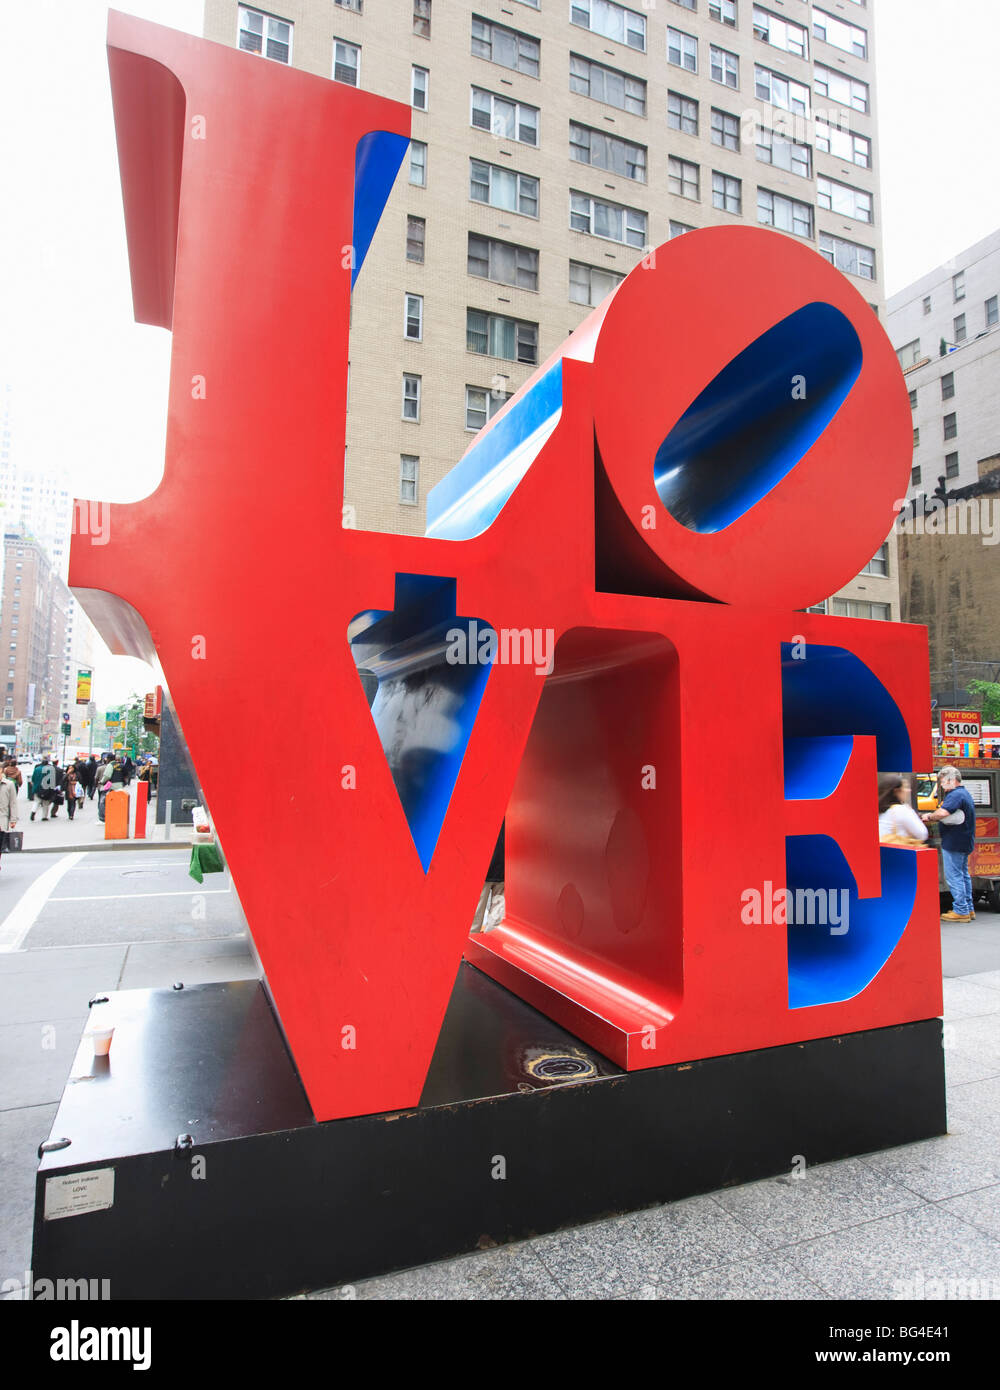 Die Pop Art Liebe Skulptur von Robert Indiana, sechste Avenue, Manhattan, New York City, New York, Vereinigte Staaten von Amerika Stockfoto